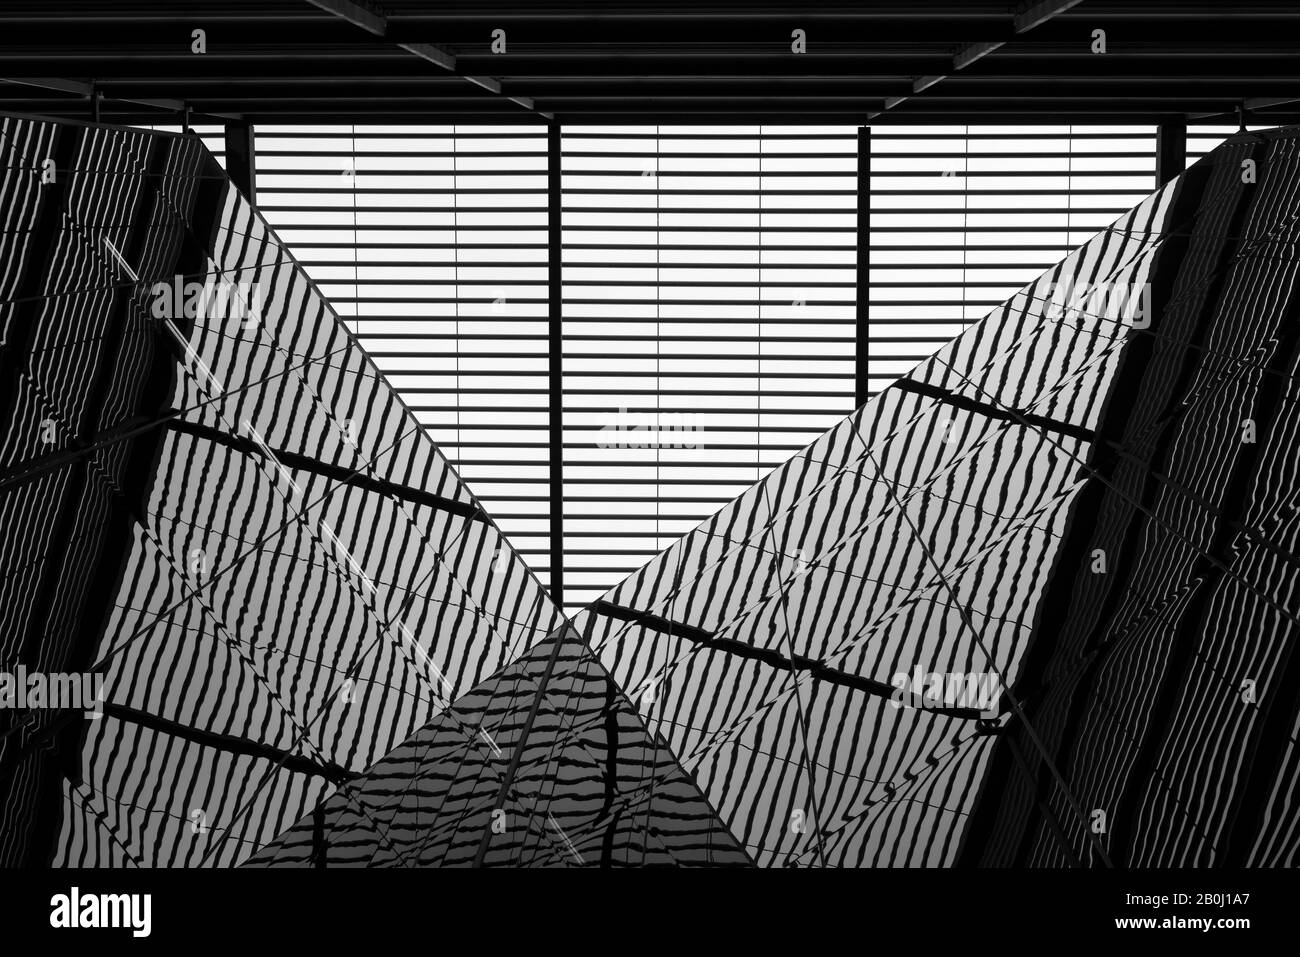 Mehr London Riverside Building abstrakte Architektur Perspektive aus der Perspektive von Spiegelglas als surreal symmetrische Komposition Stockfoto